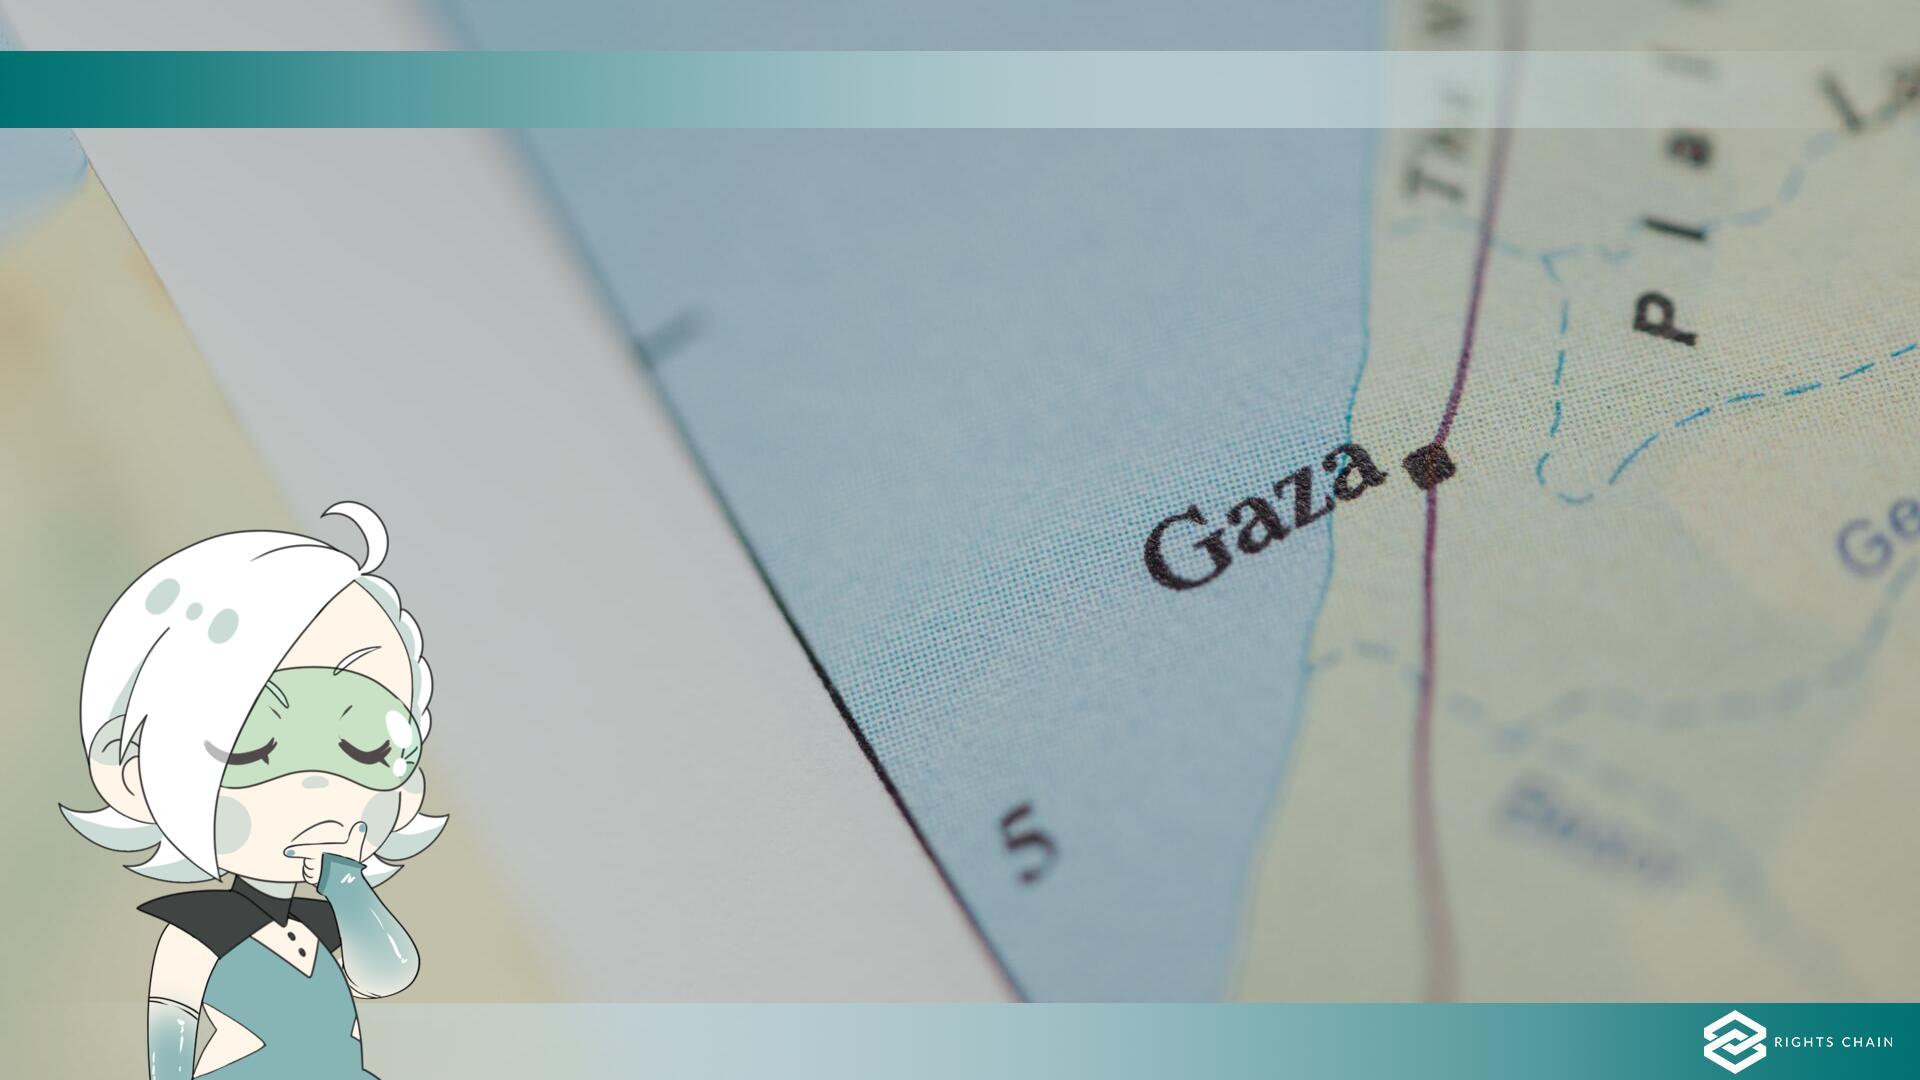 Adobe vende immagini generate dall'IA - raffigurano la violenza a Gaza e in Israele.